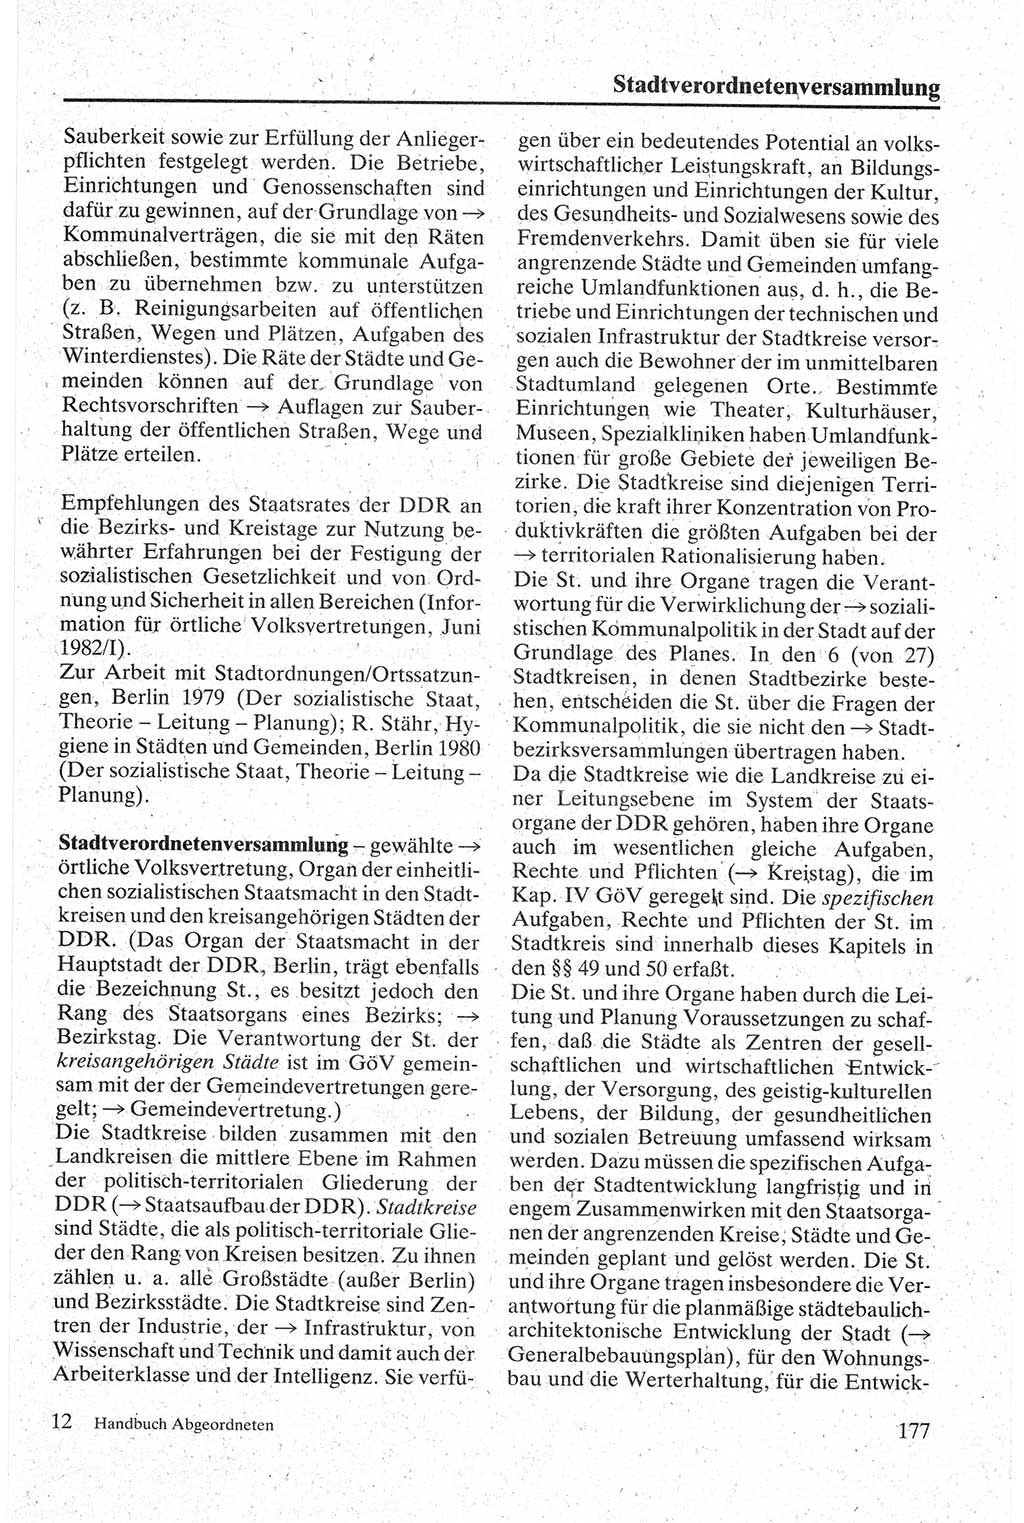 Handbuch für den Abgeordneten [Deutsche Demokratische Republik (DDR)] 1984, Seite 177 (Hb. Abg. DDR 1984, S. 177)